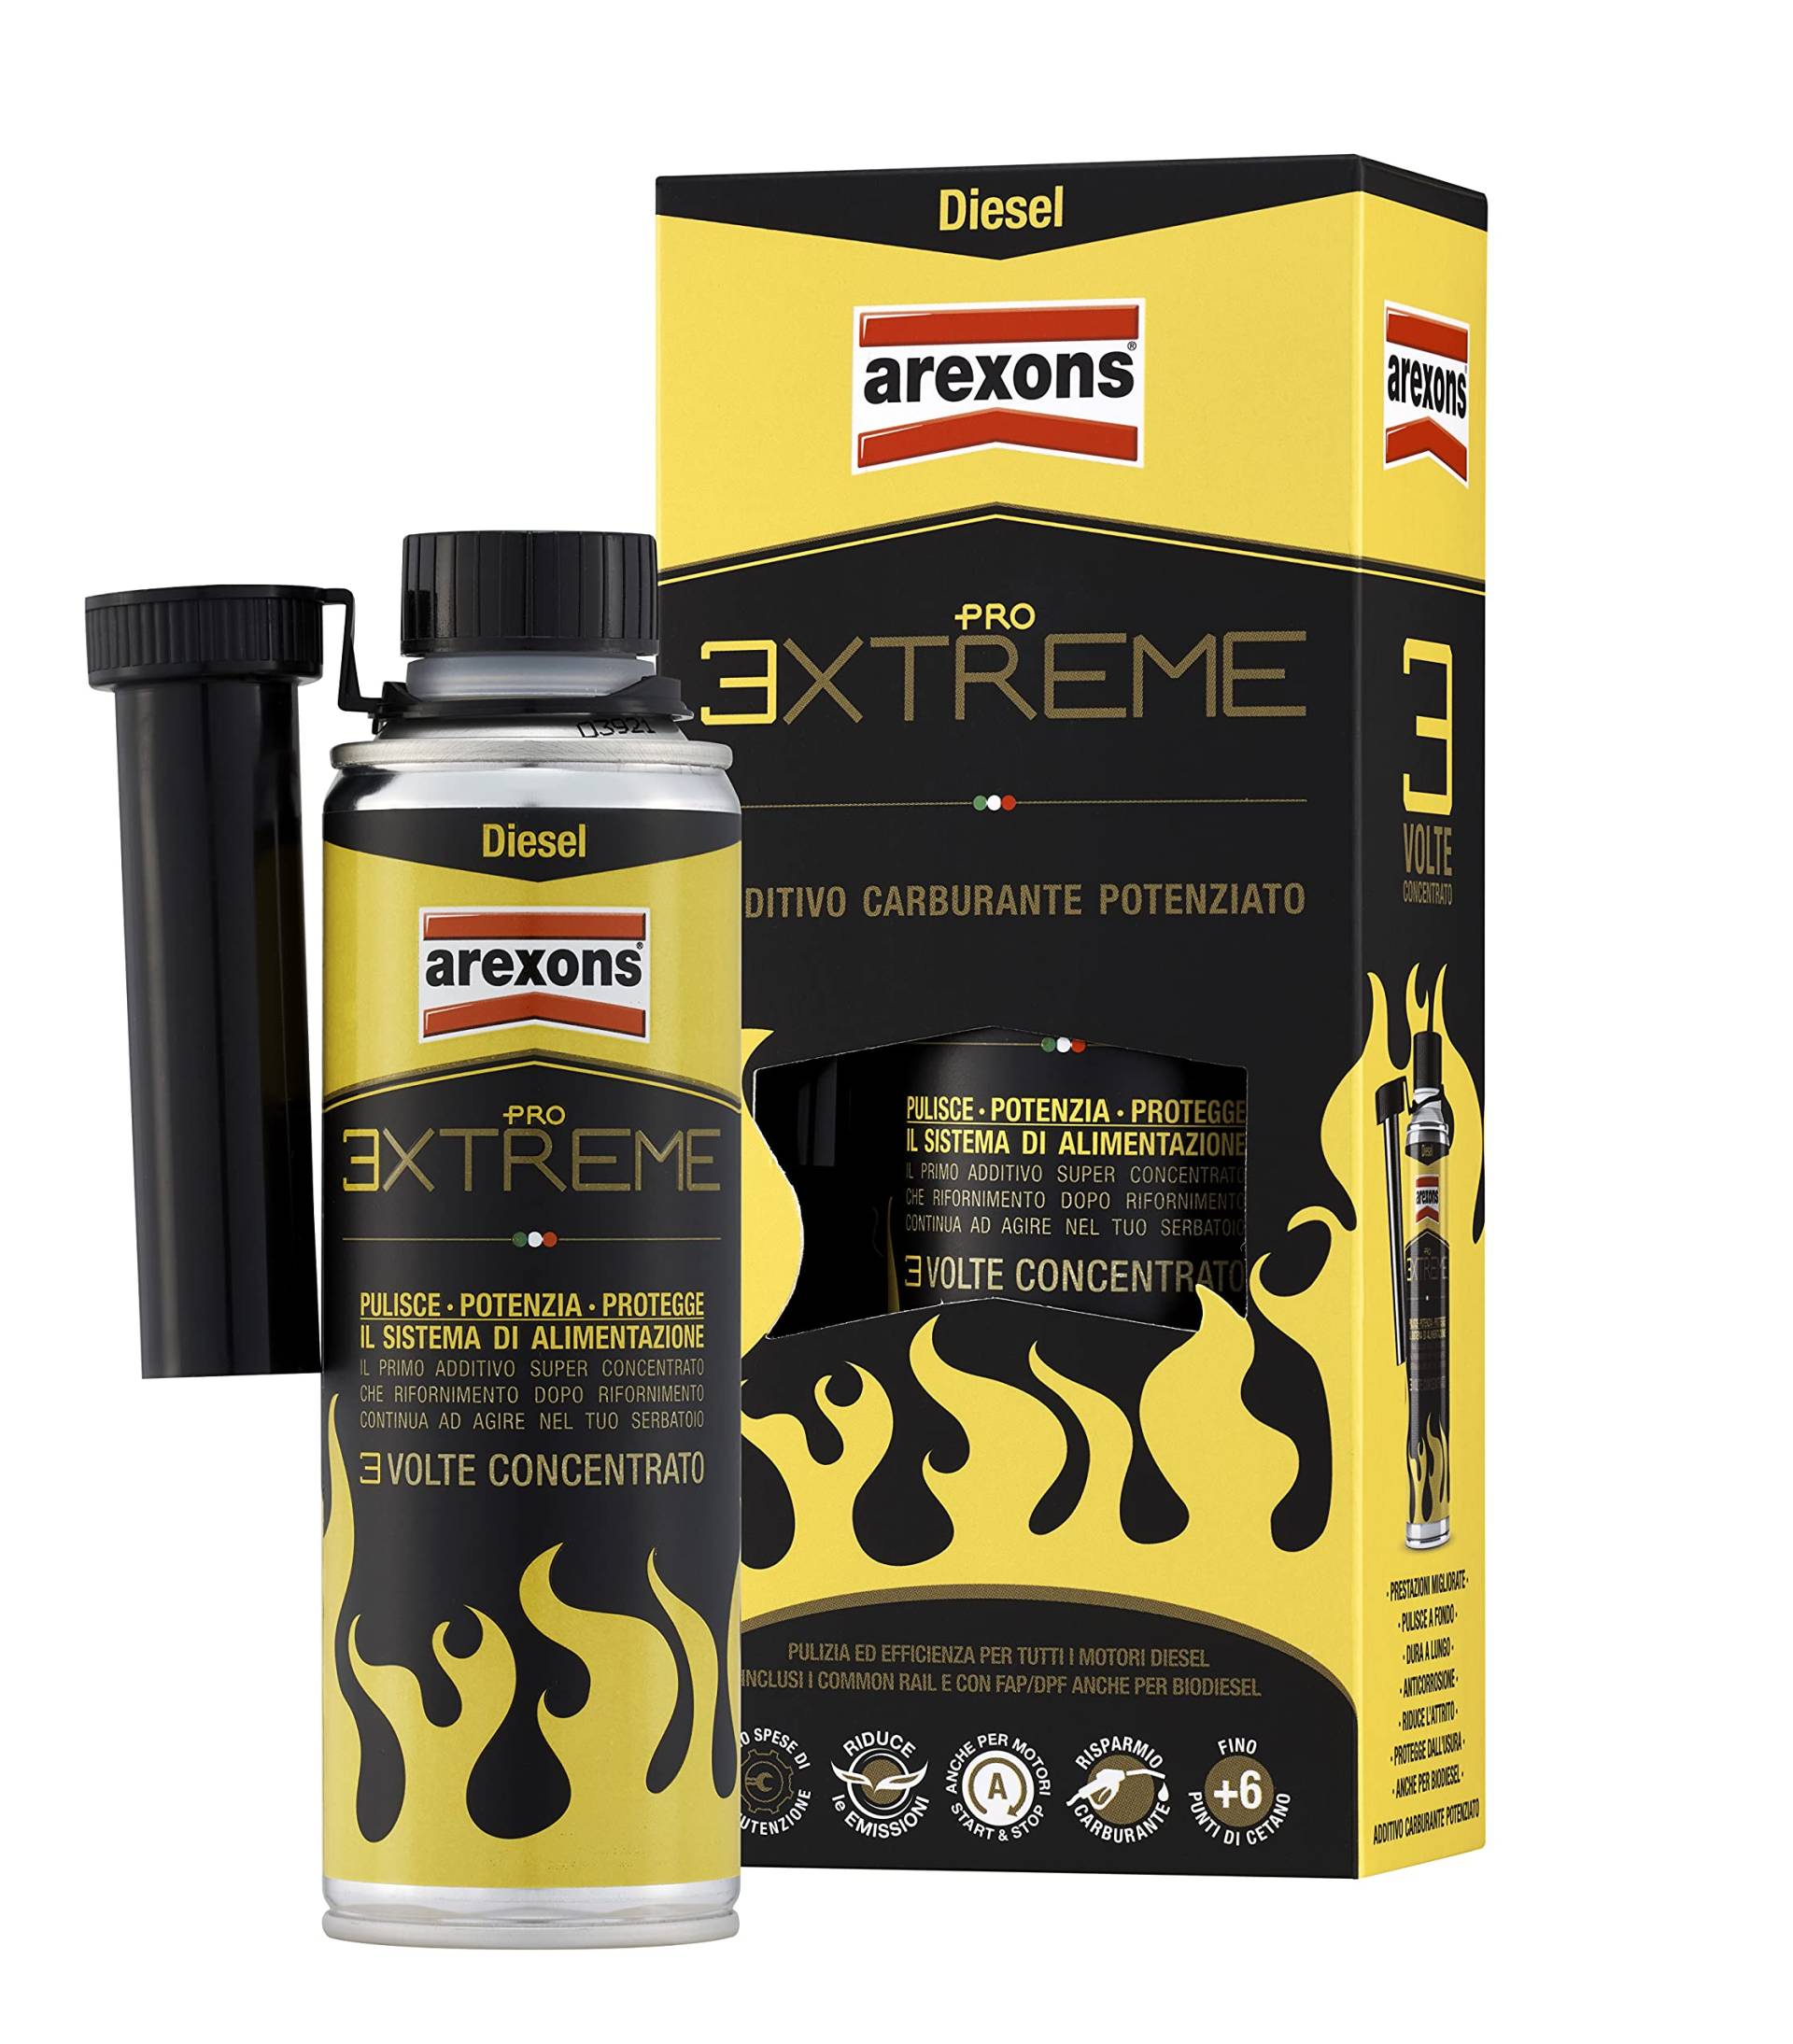 Arexons Zusatzstoff Diesel Pro 3XTREME reinigt, schützt und erhöht die Leistung von Arexons